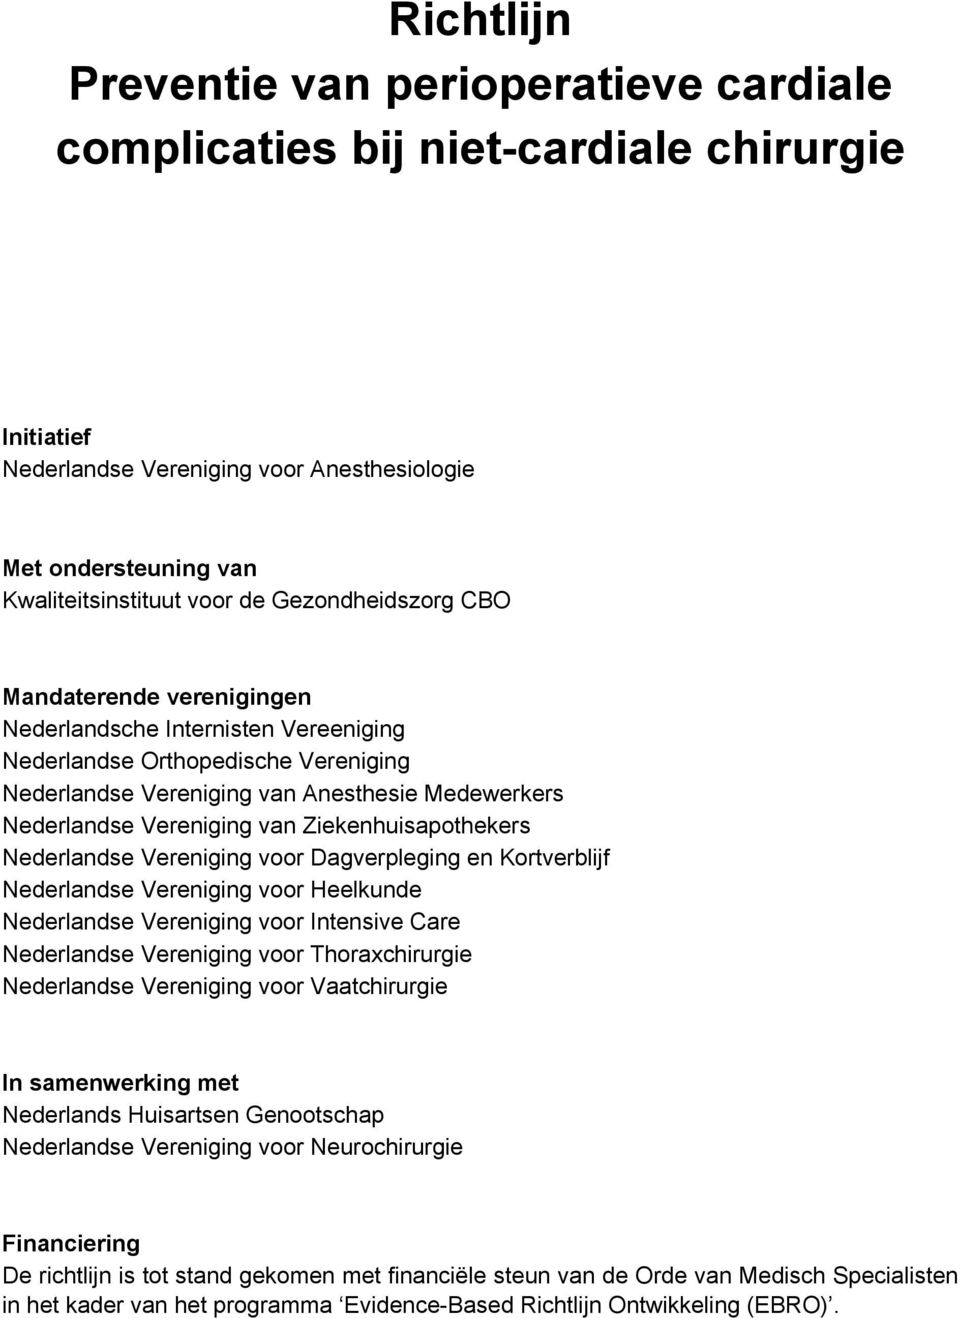 Ziekenhuisapothekers Nederlandse Vereniging voor Dagverpleging en Kortverblijf Nederlandse Vereniging voor Heelkunde Nederlandse Vereniging voor Intensive Care Nederlandse Vereniging voor